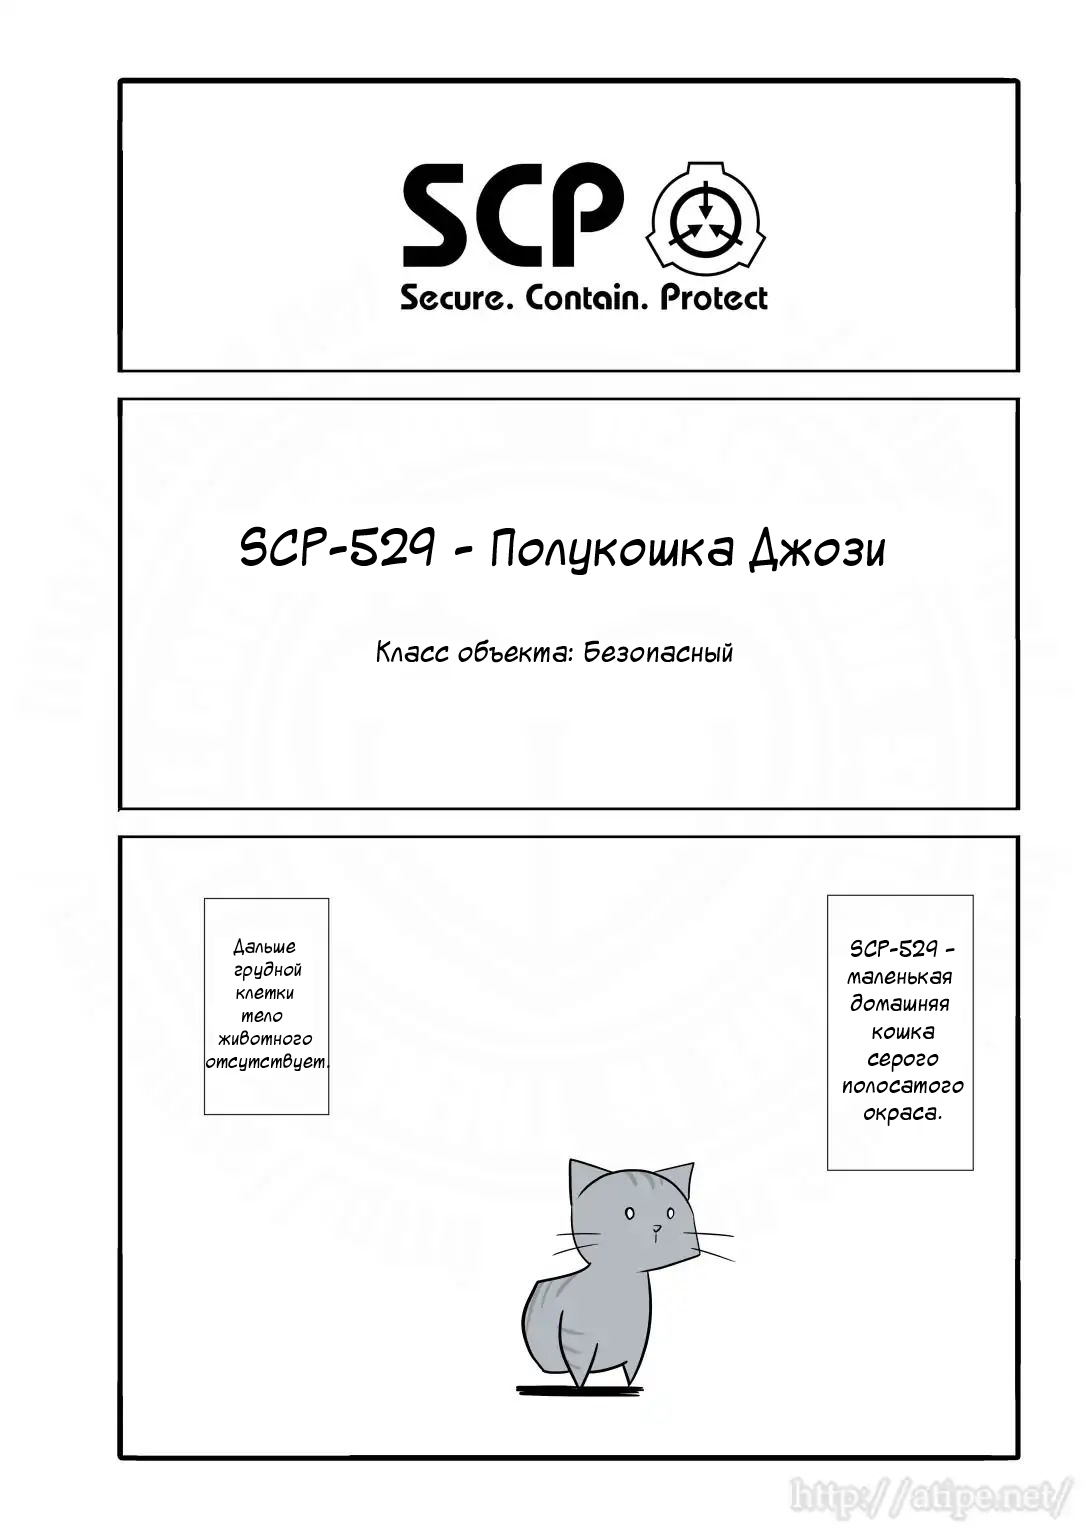 Упрощенный SCP 1 - 25 SCP-529